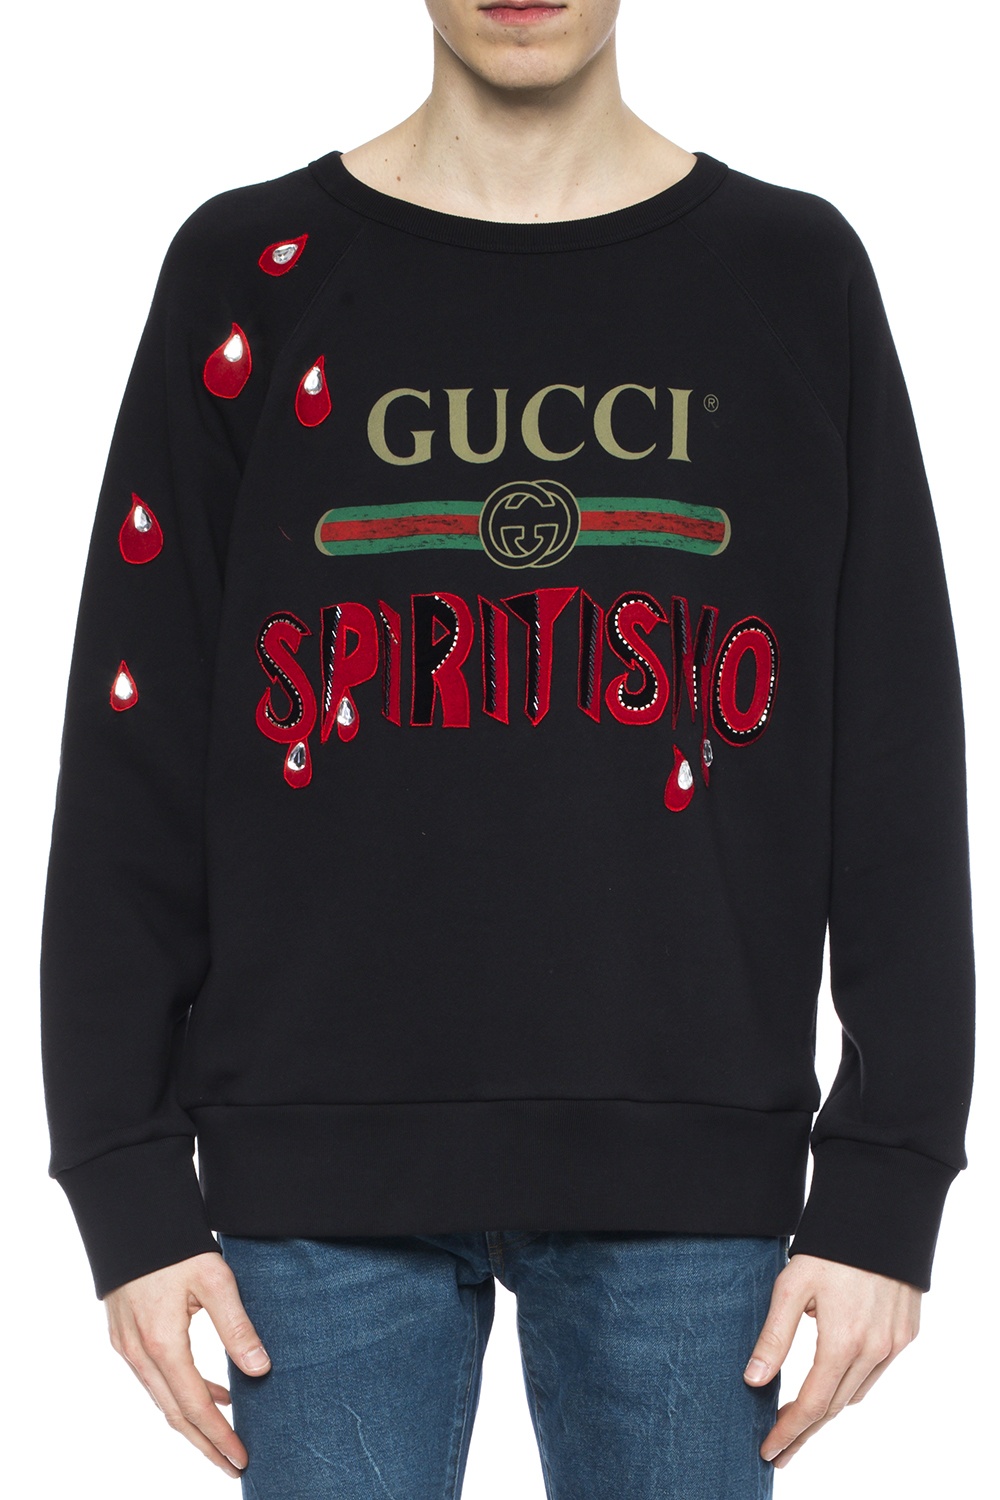 ydre produktion kutter Web' sweatshirt Gucci - Vitkac US